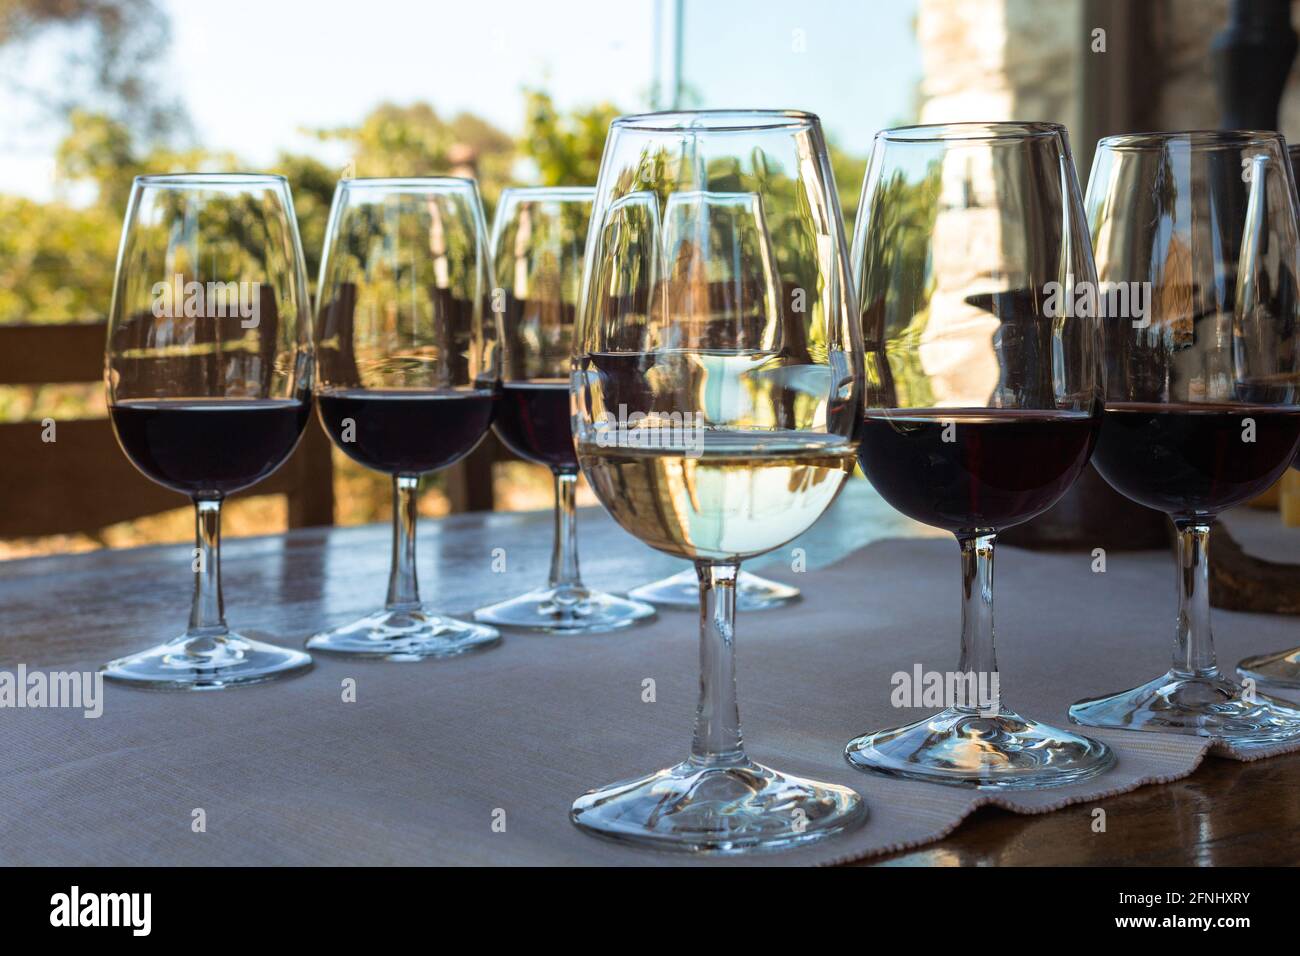 Primo piano vista dei bicchieri da vino sul tavolo durante la degustazione di vini nel quartiere di Urla nella provincia di Smirne in Turchia. È una giornata estiva soleggiata. Foto Stock